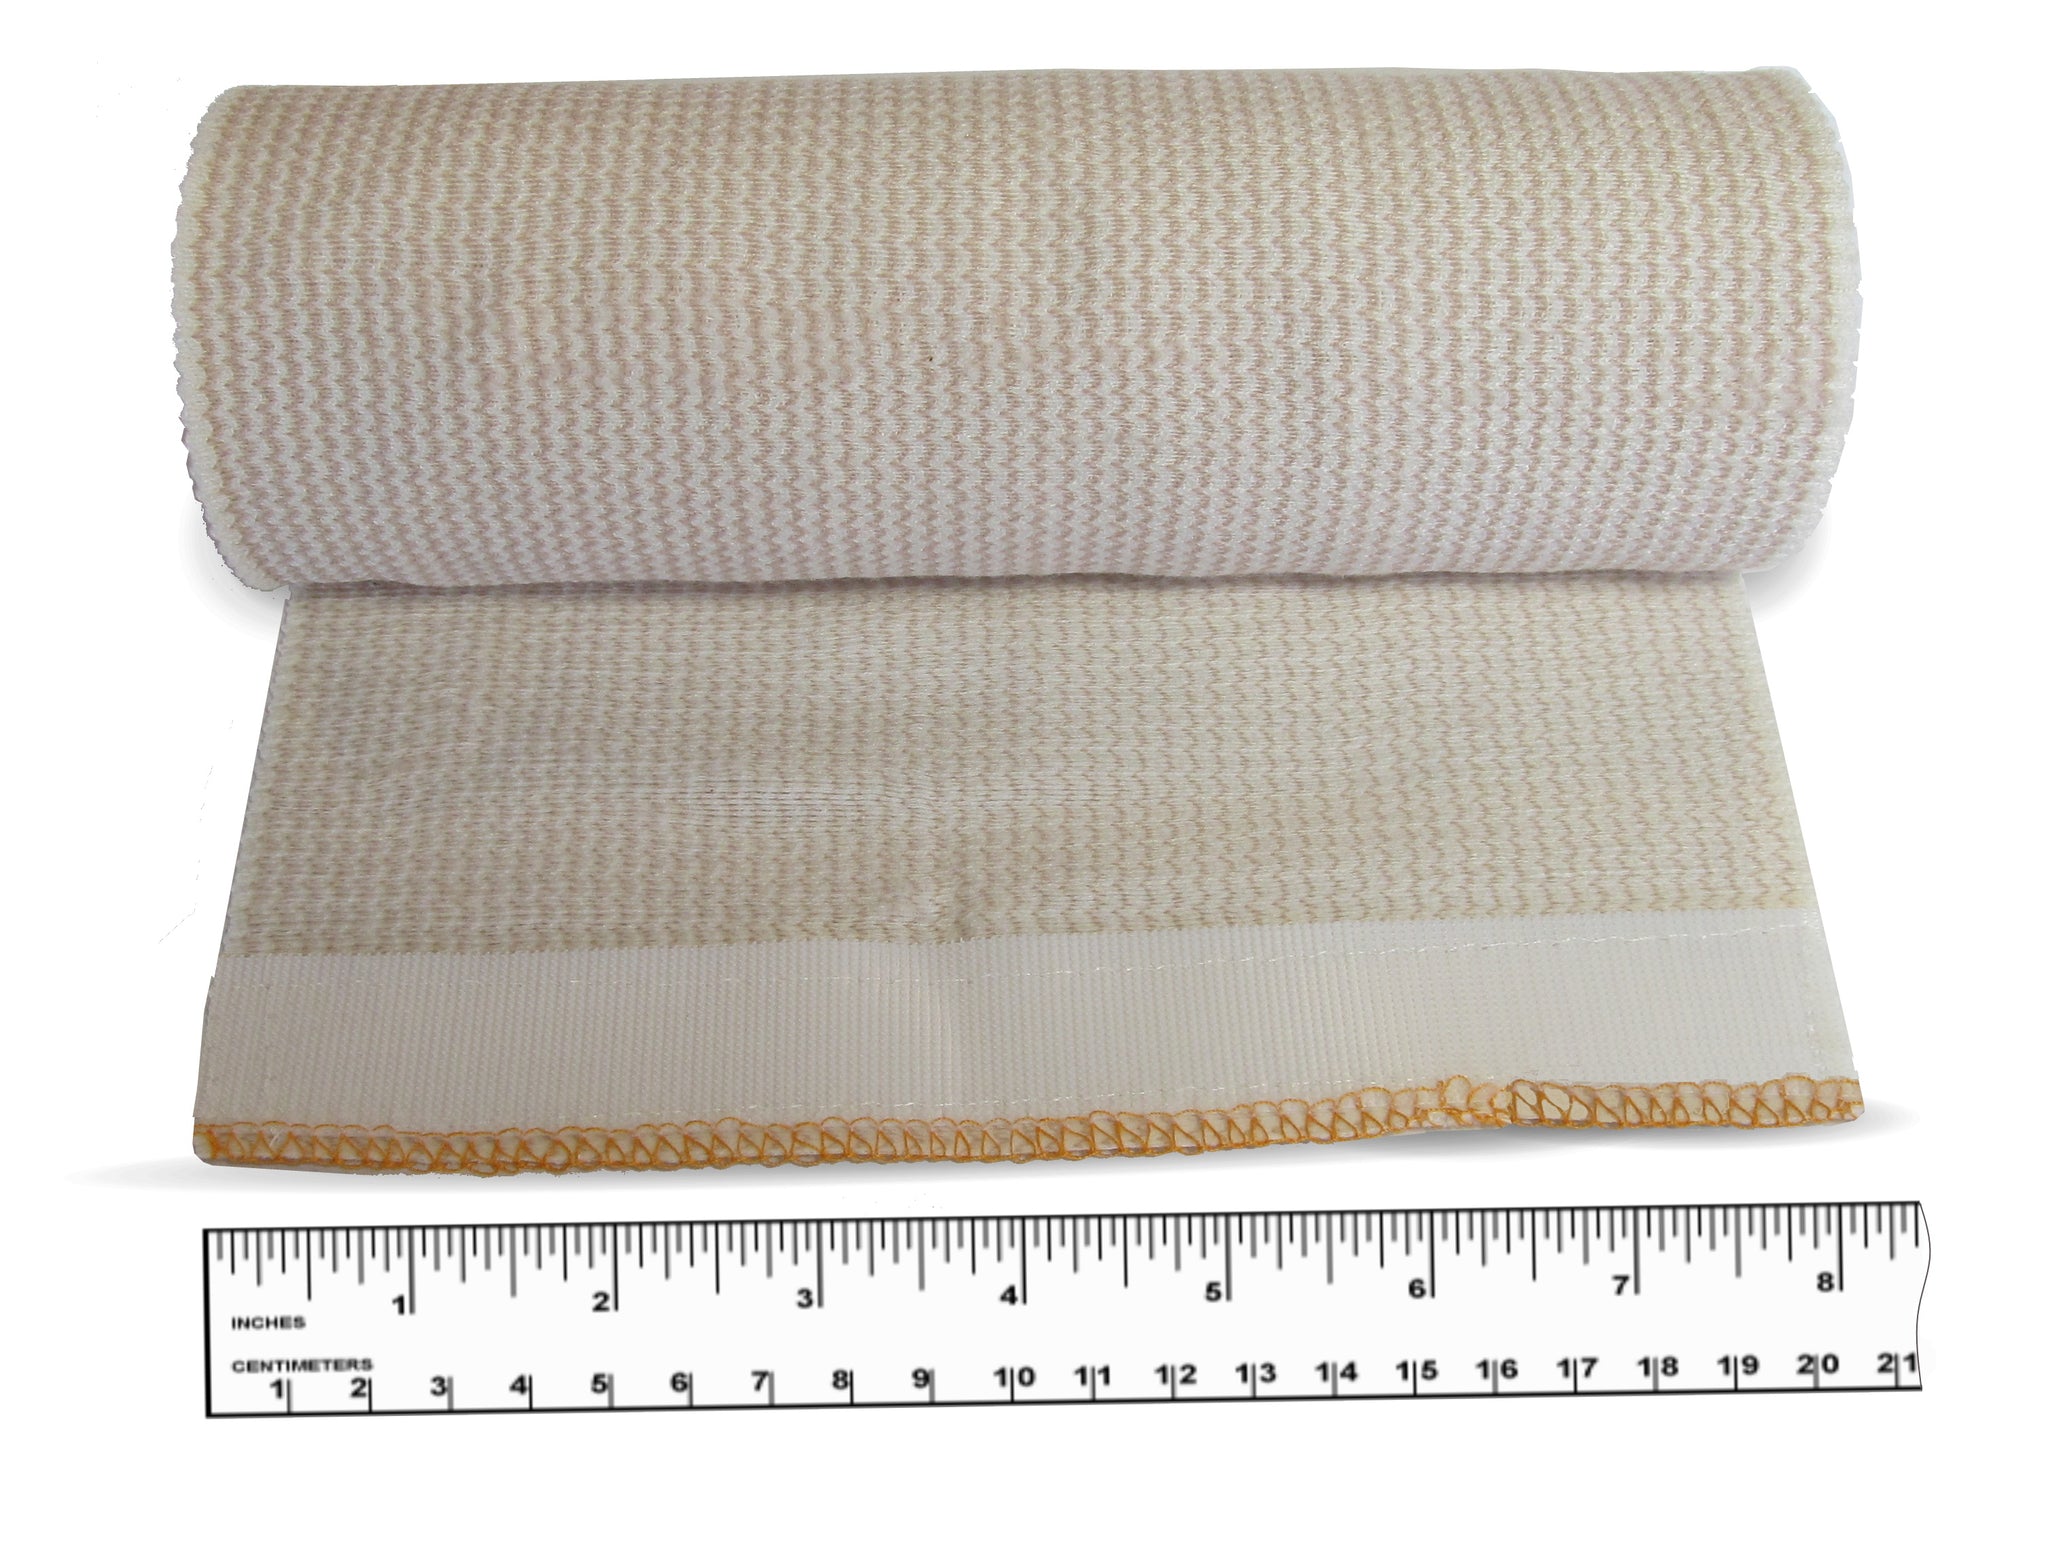 Jumbo Size Body Wrap Elastic Bandages - Ace Bandage with Velco - 8 Inc -  Neutripure